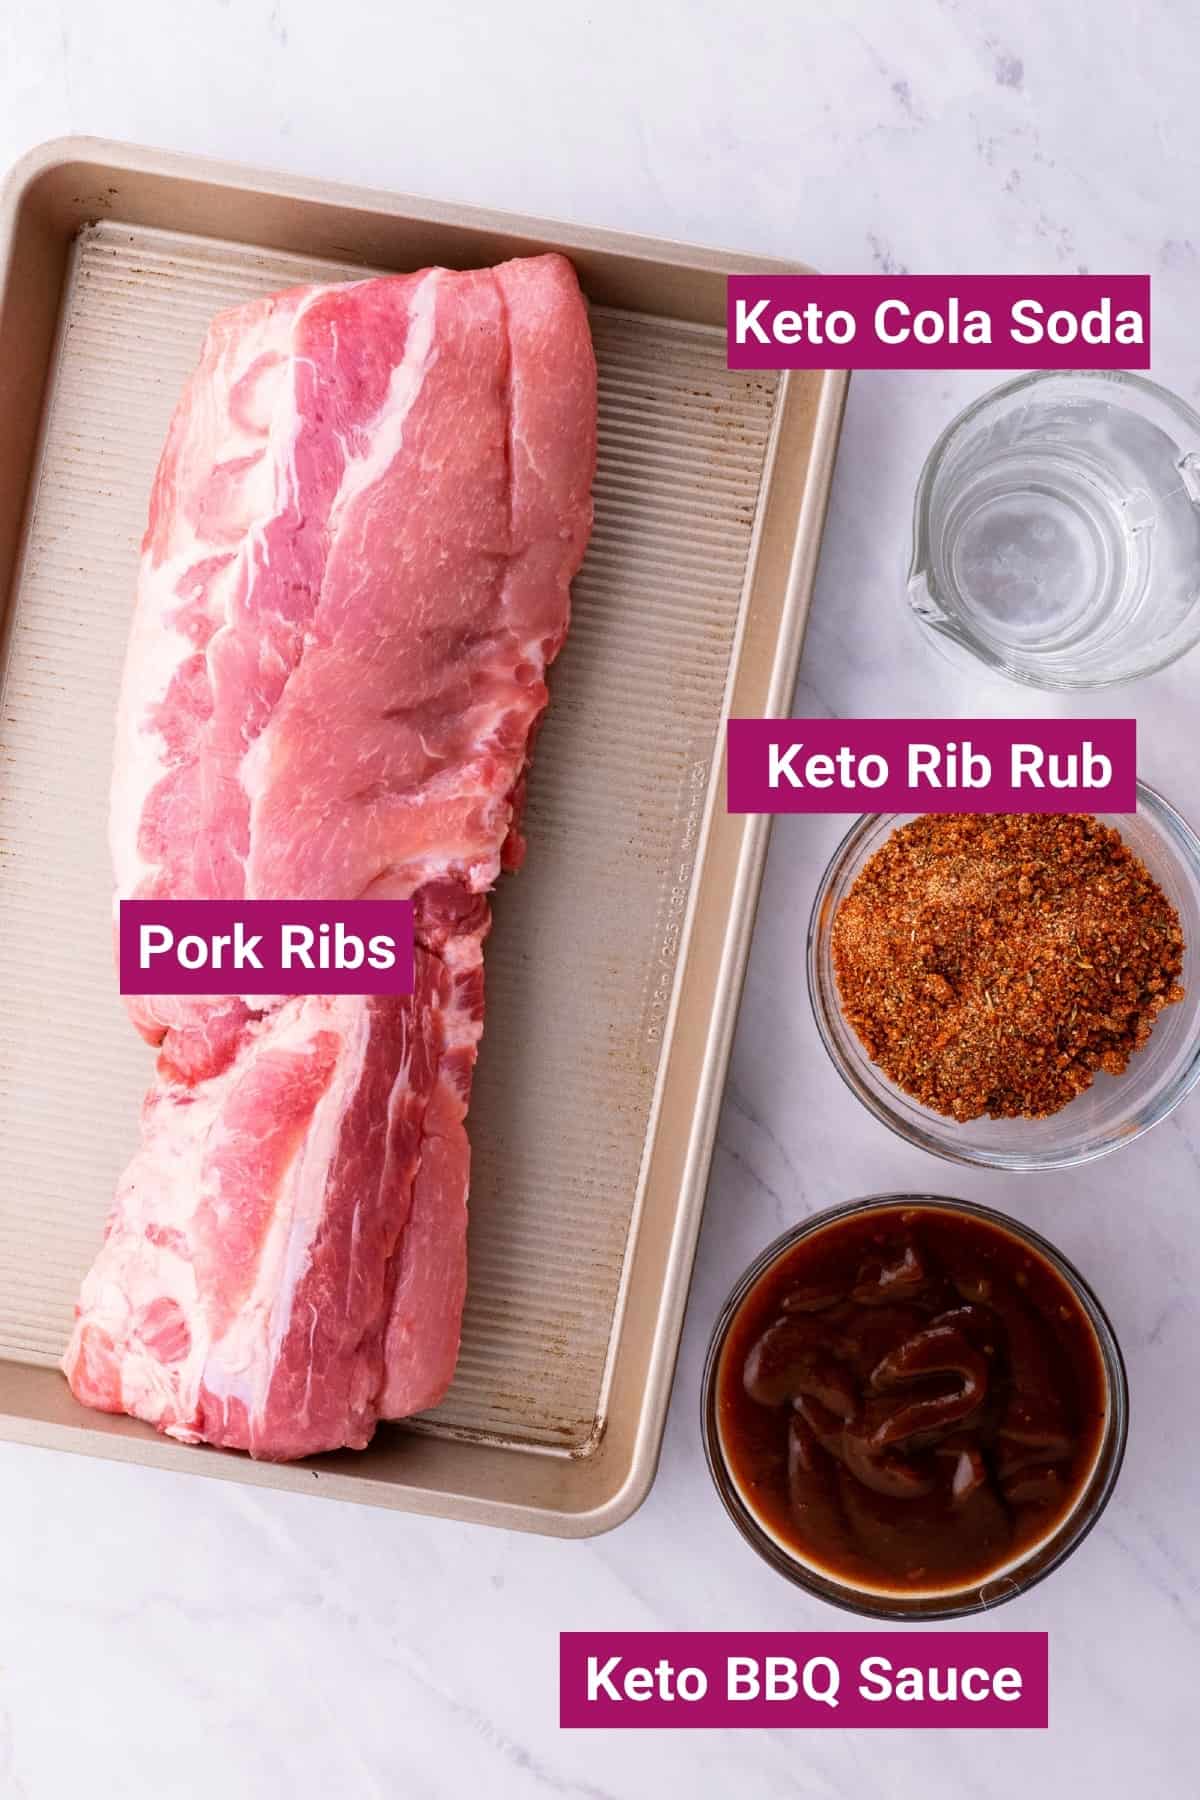 ingredients needed to make keto ribs like pork ribs, zevia keto soda, bbq seasoning keto rib rub, and keto bbq sauce